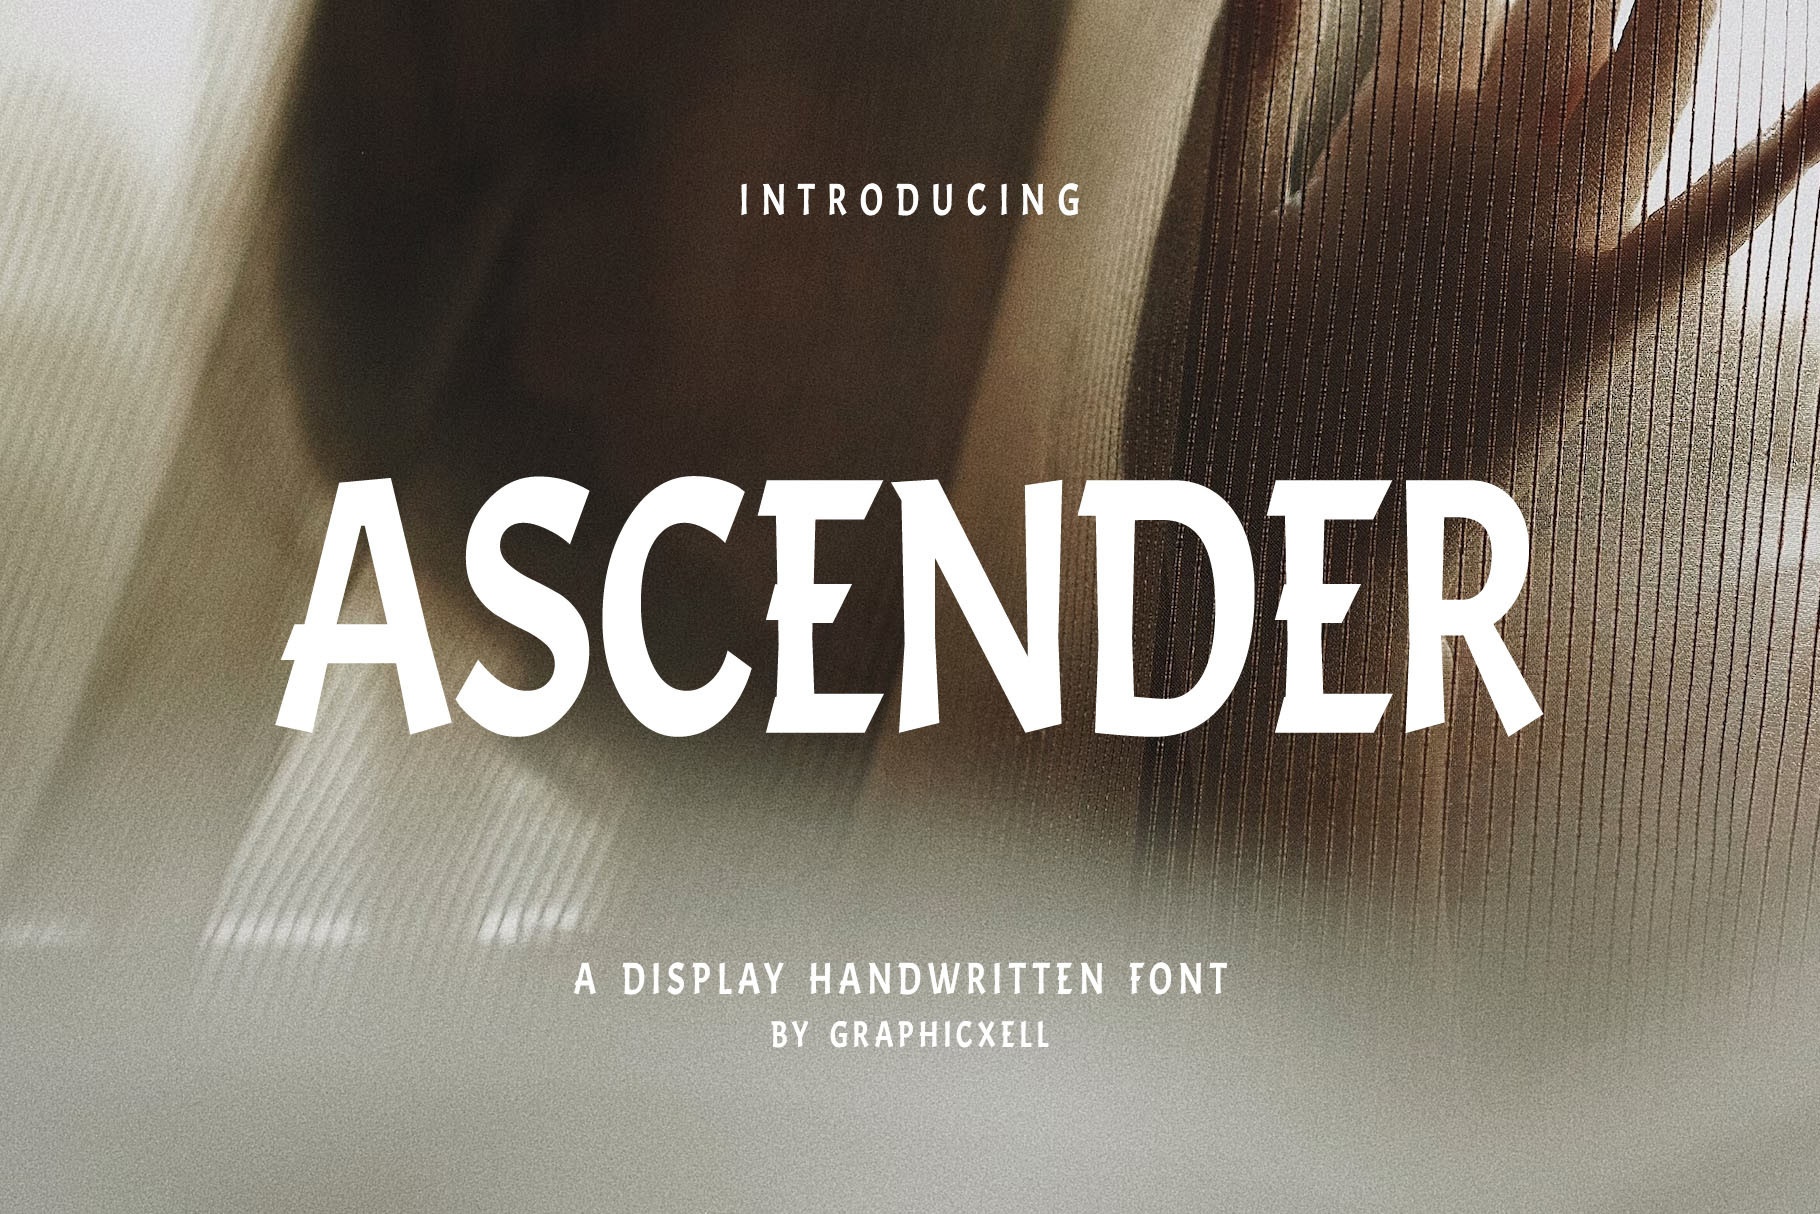 Ascender Font